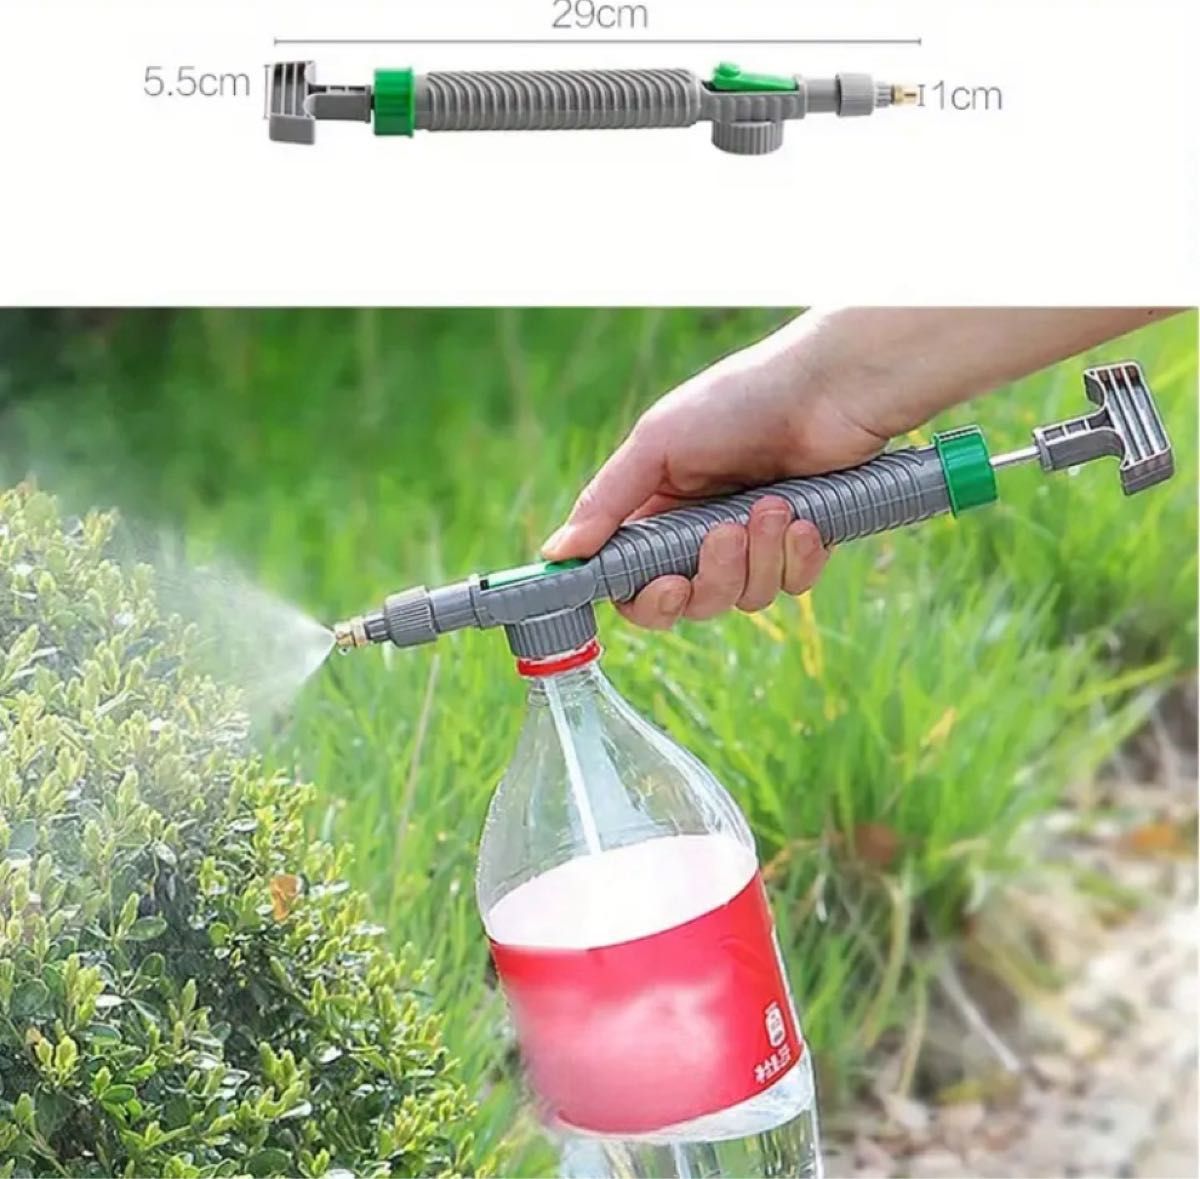 ペットボトルスプレー ヘッドノズル 庭の水やりツール 高圧エアポンプ 手動噴霧器 軽量 ガーデニング 水撒き